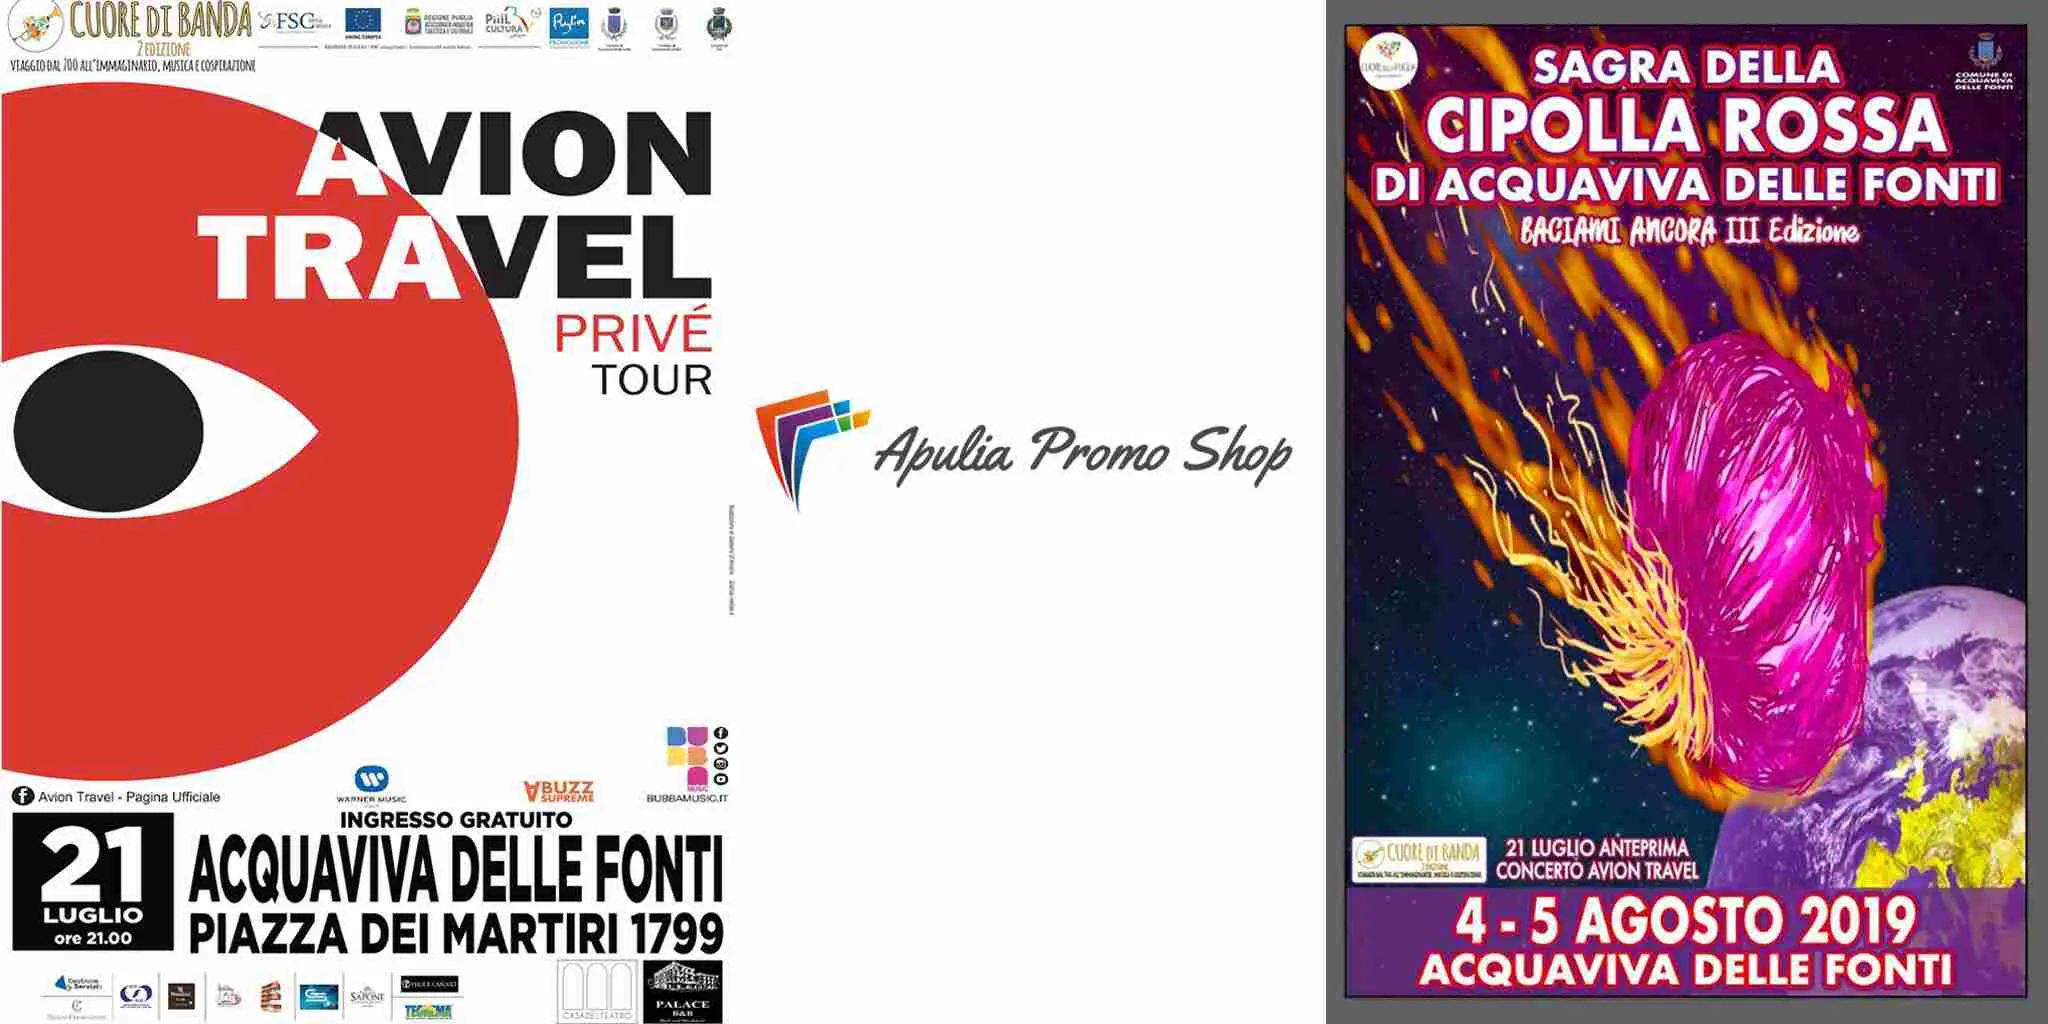 apulia-promo-shop-la-cipolla-rossa-avion-travel-prive-tour-eventi-organizzazione